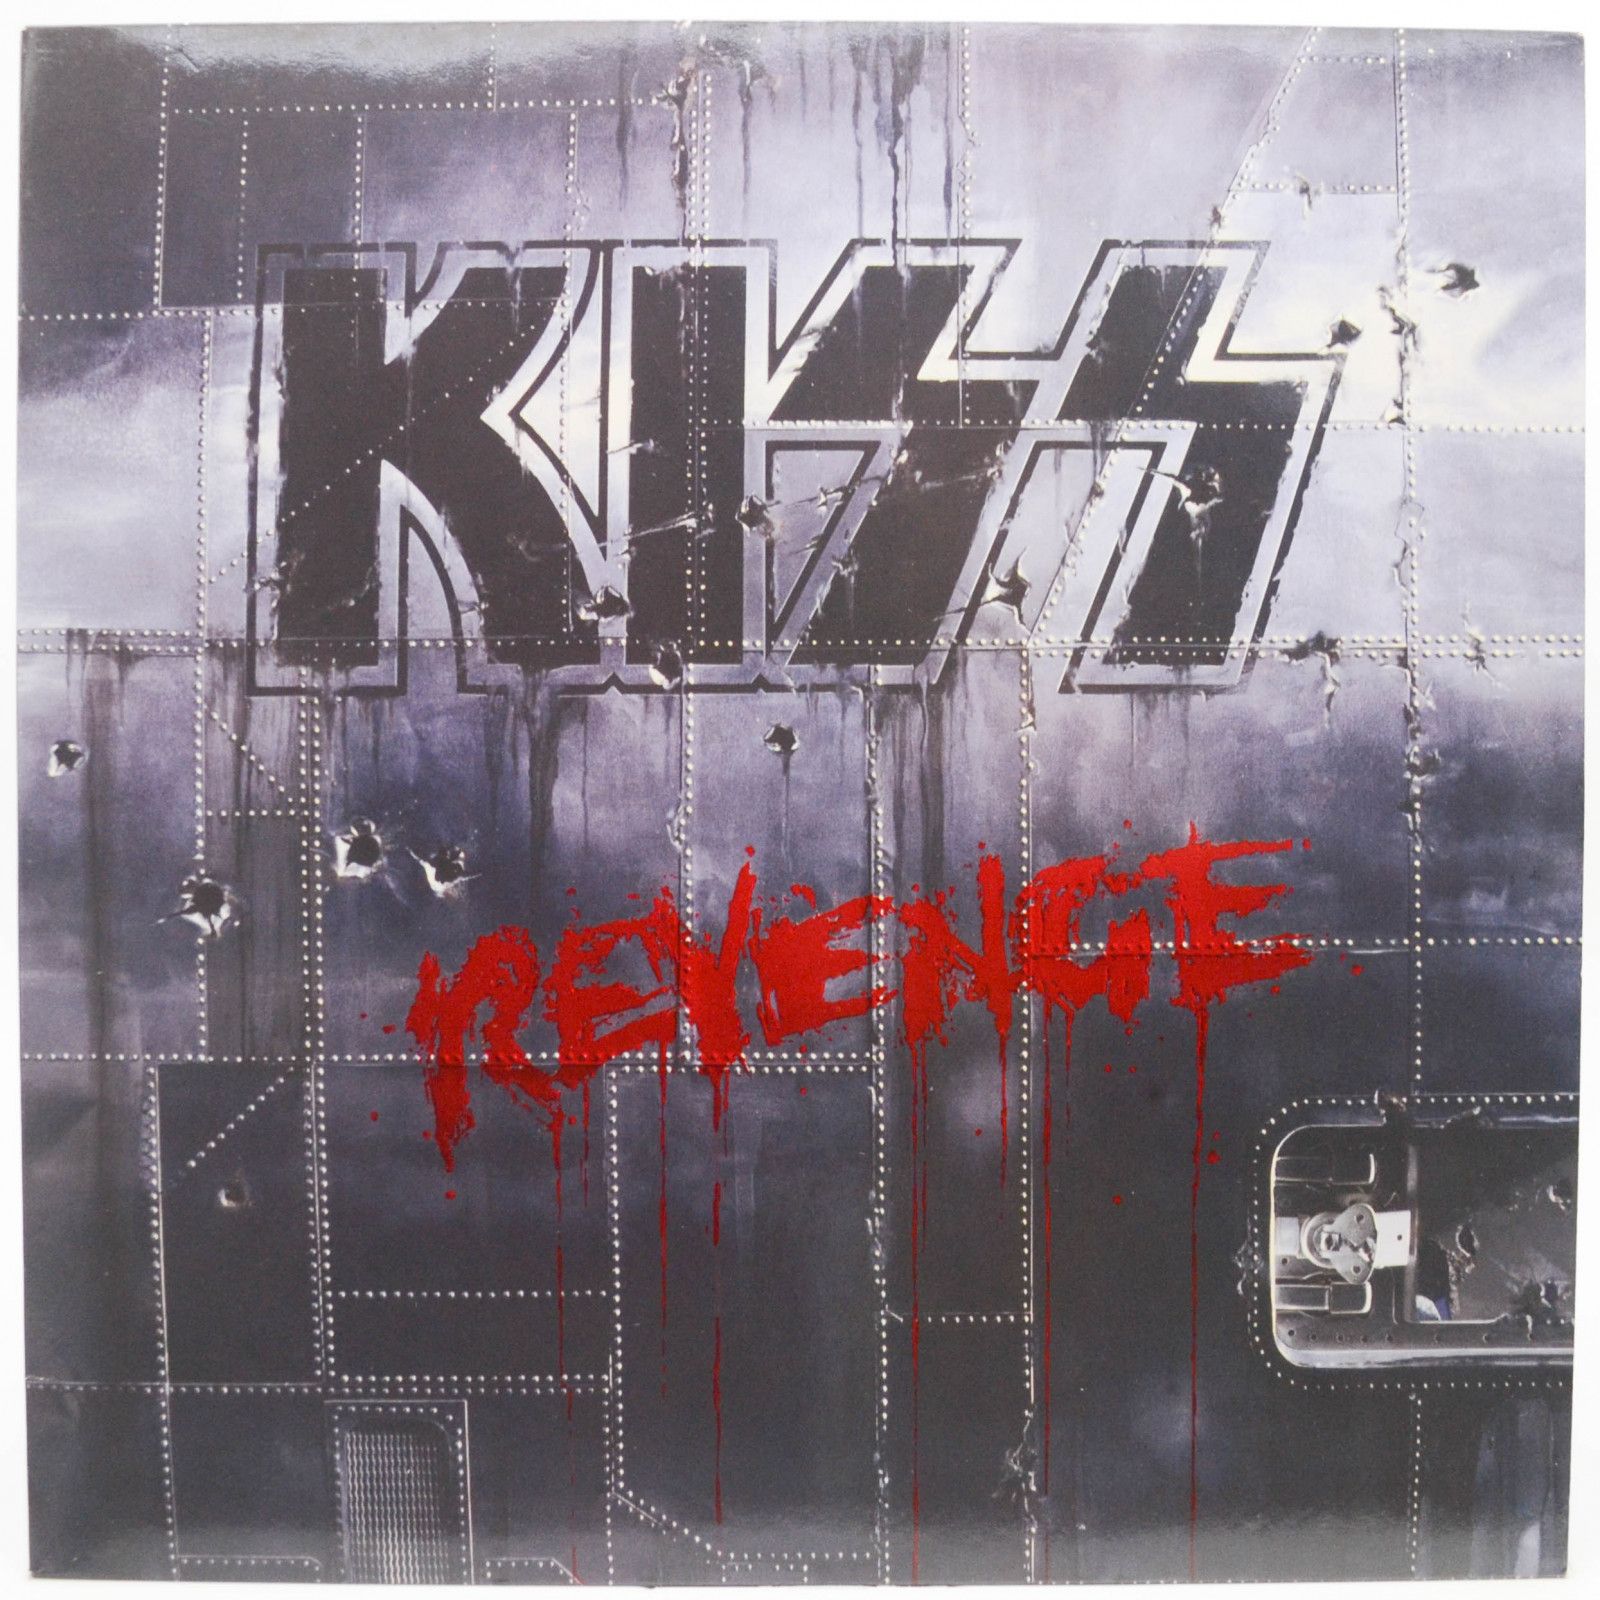 Kiss — Revenge, 1992